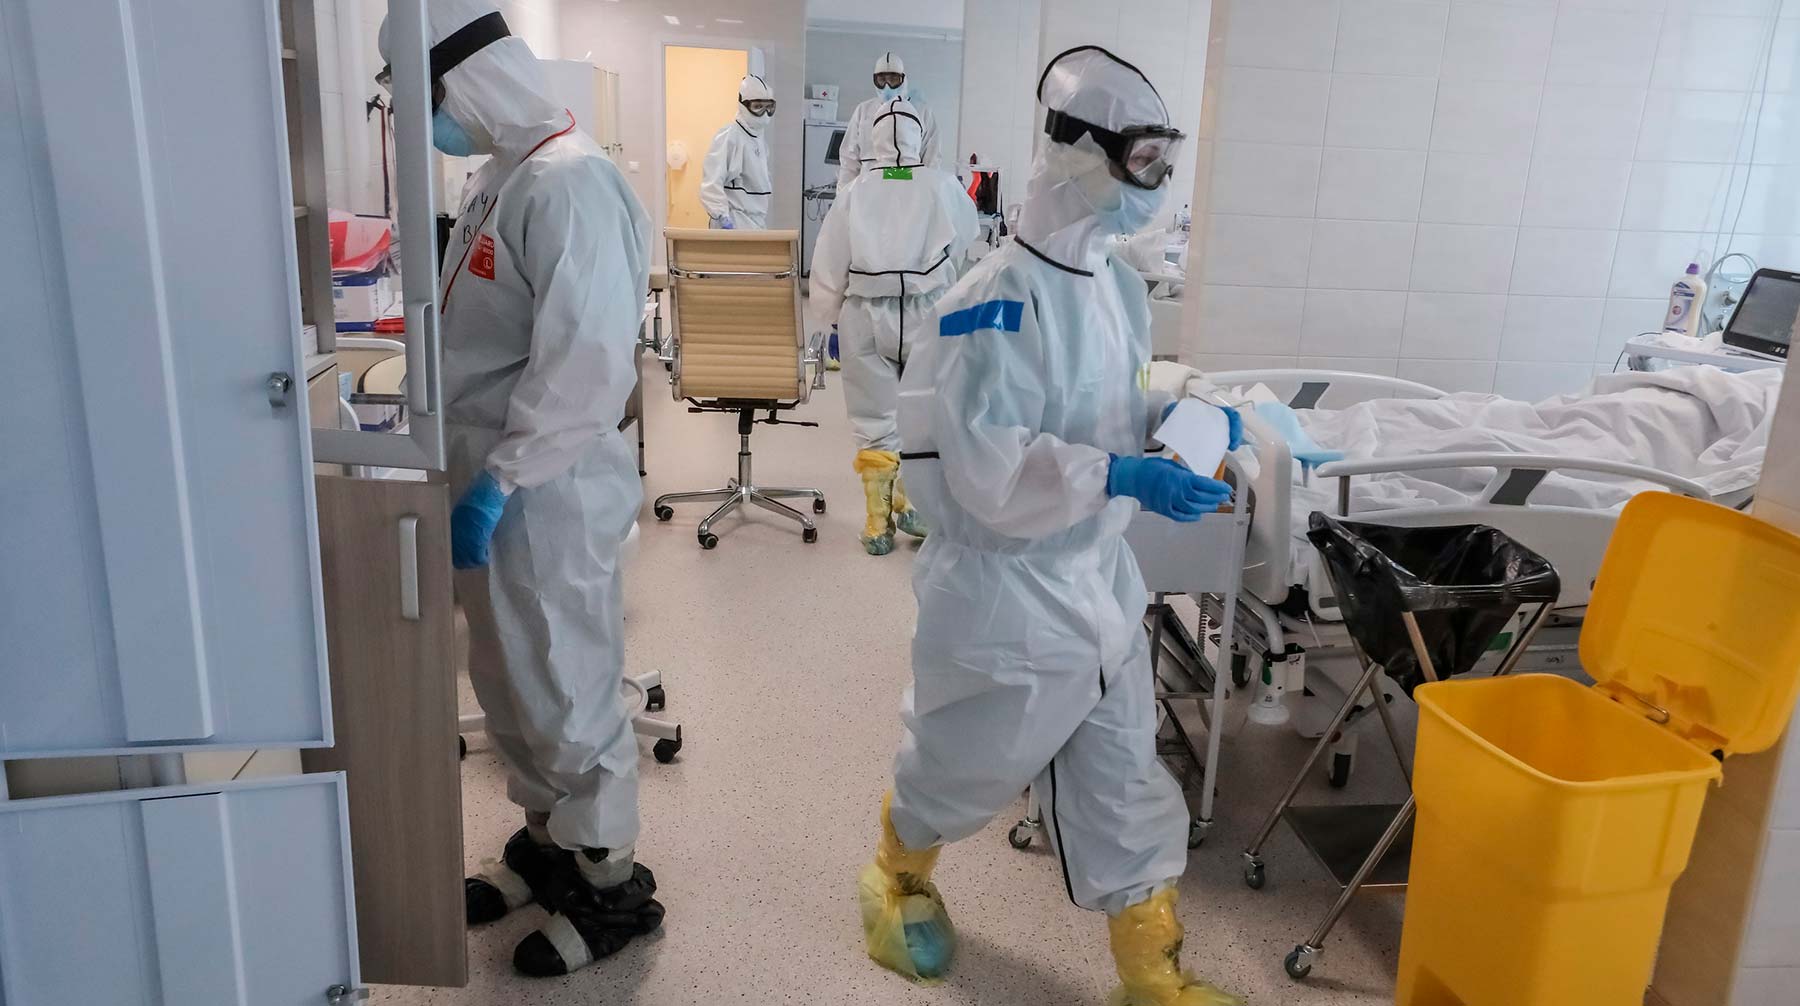 Глава государства также назвал недопустимой медлительность во время пандемии коронавирусной инфекции Фото: © АГН Москва / Софья Сандурская